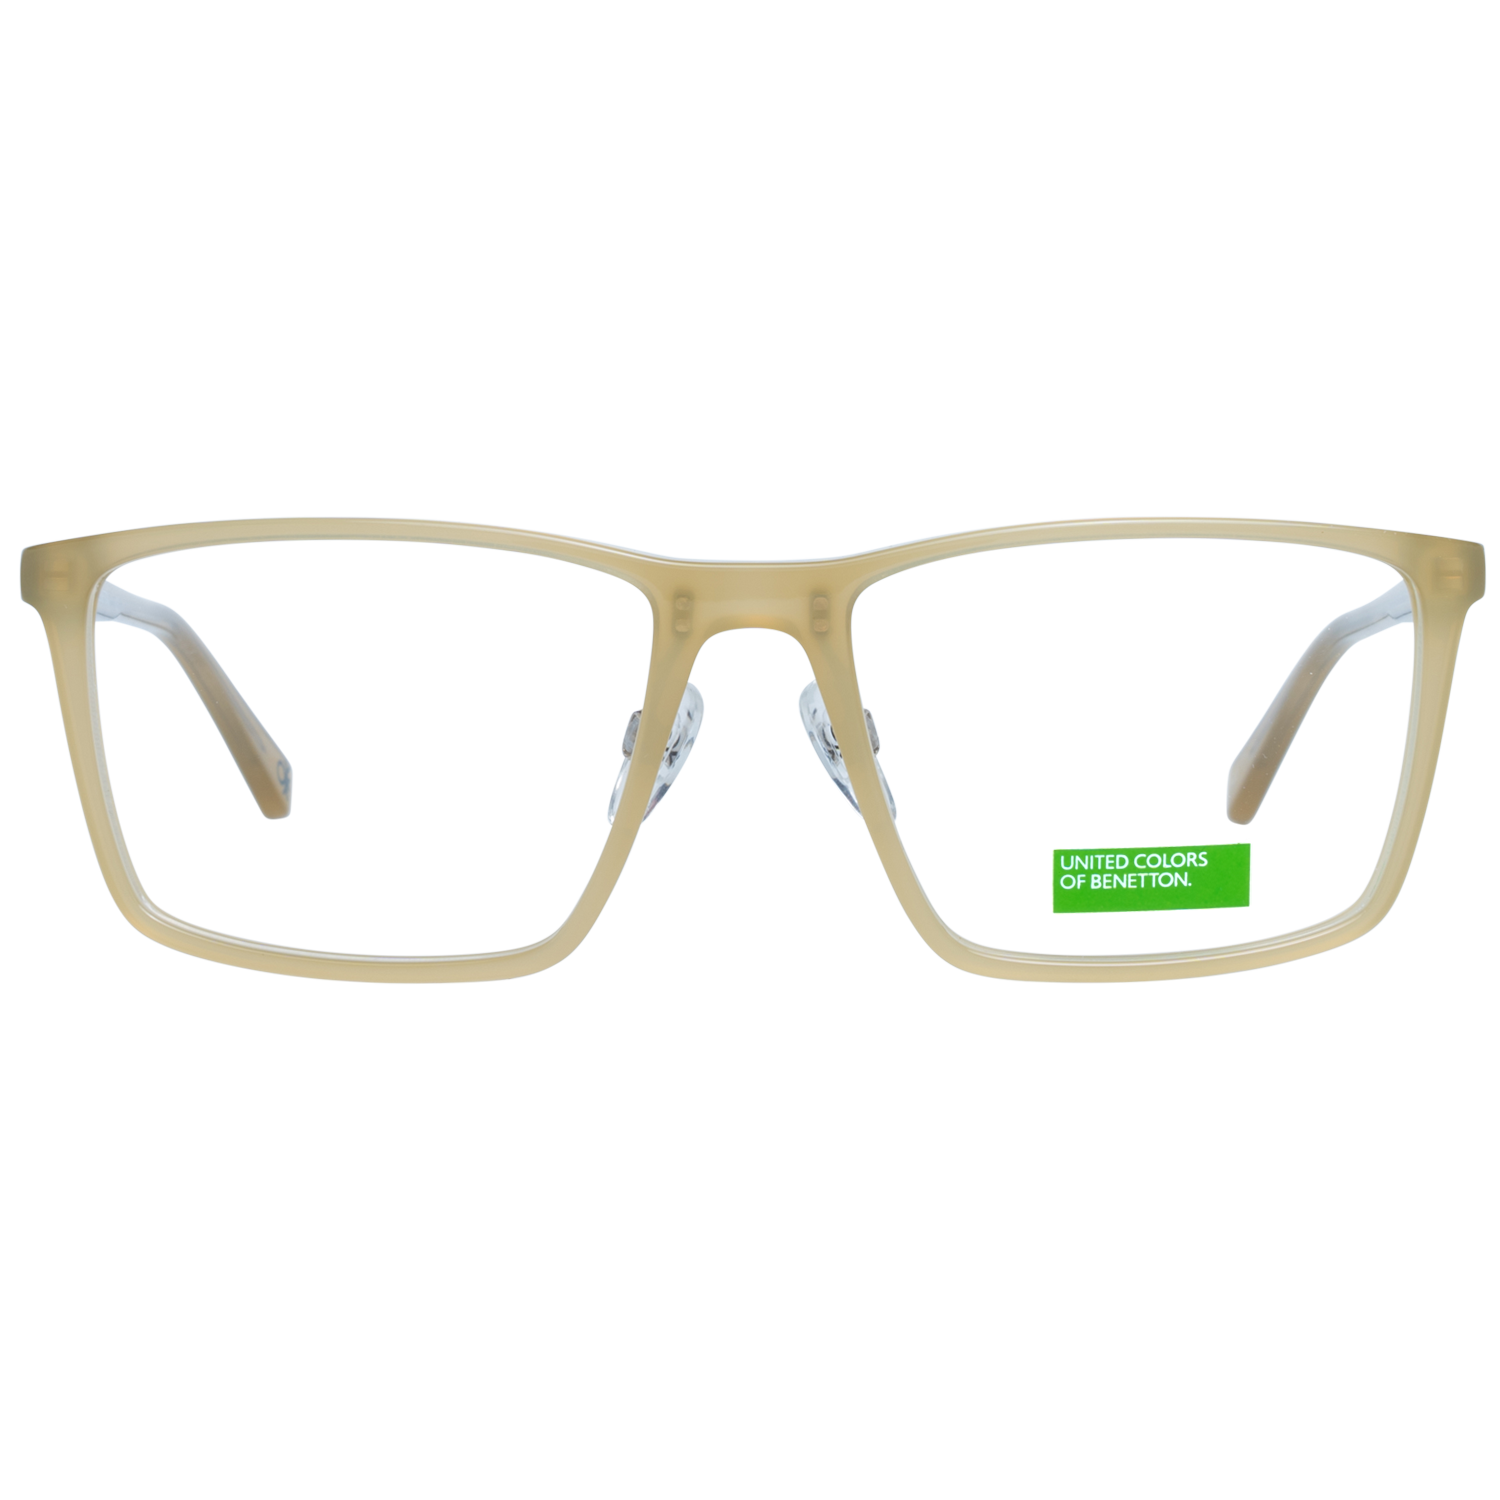 Benetton Frames Benetton Glasses Frames BEO1001 526 54 Eyeglasses Eyewear UK USA Australia 